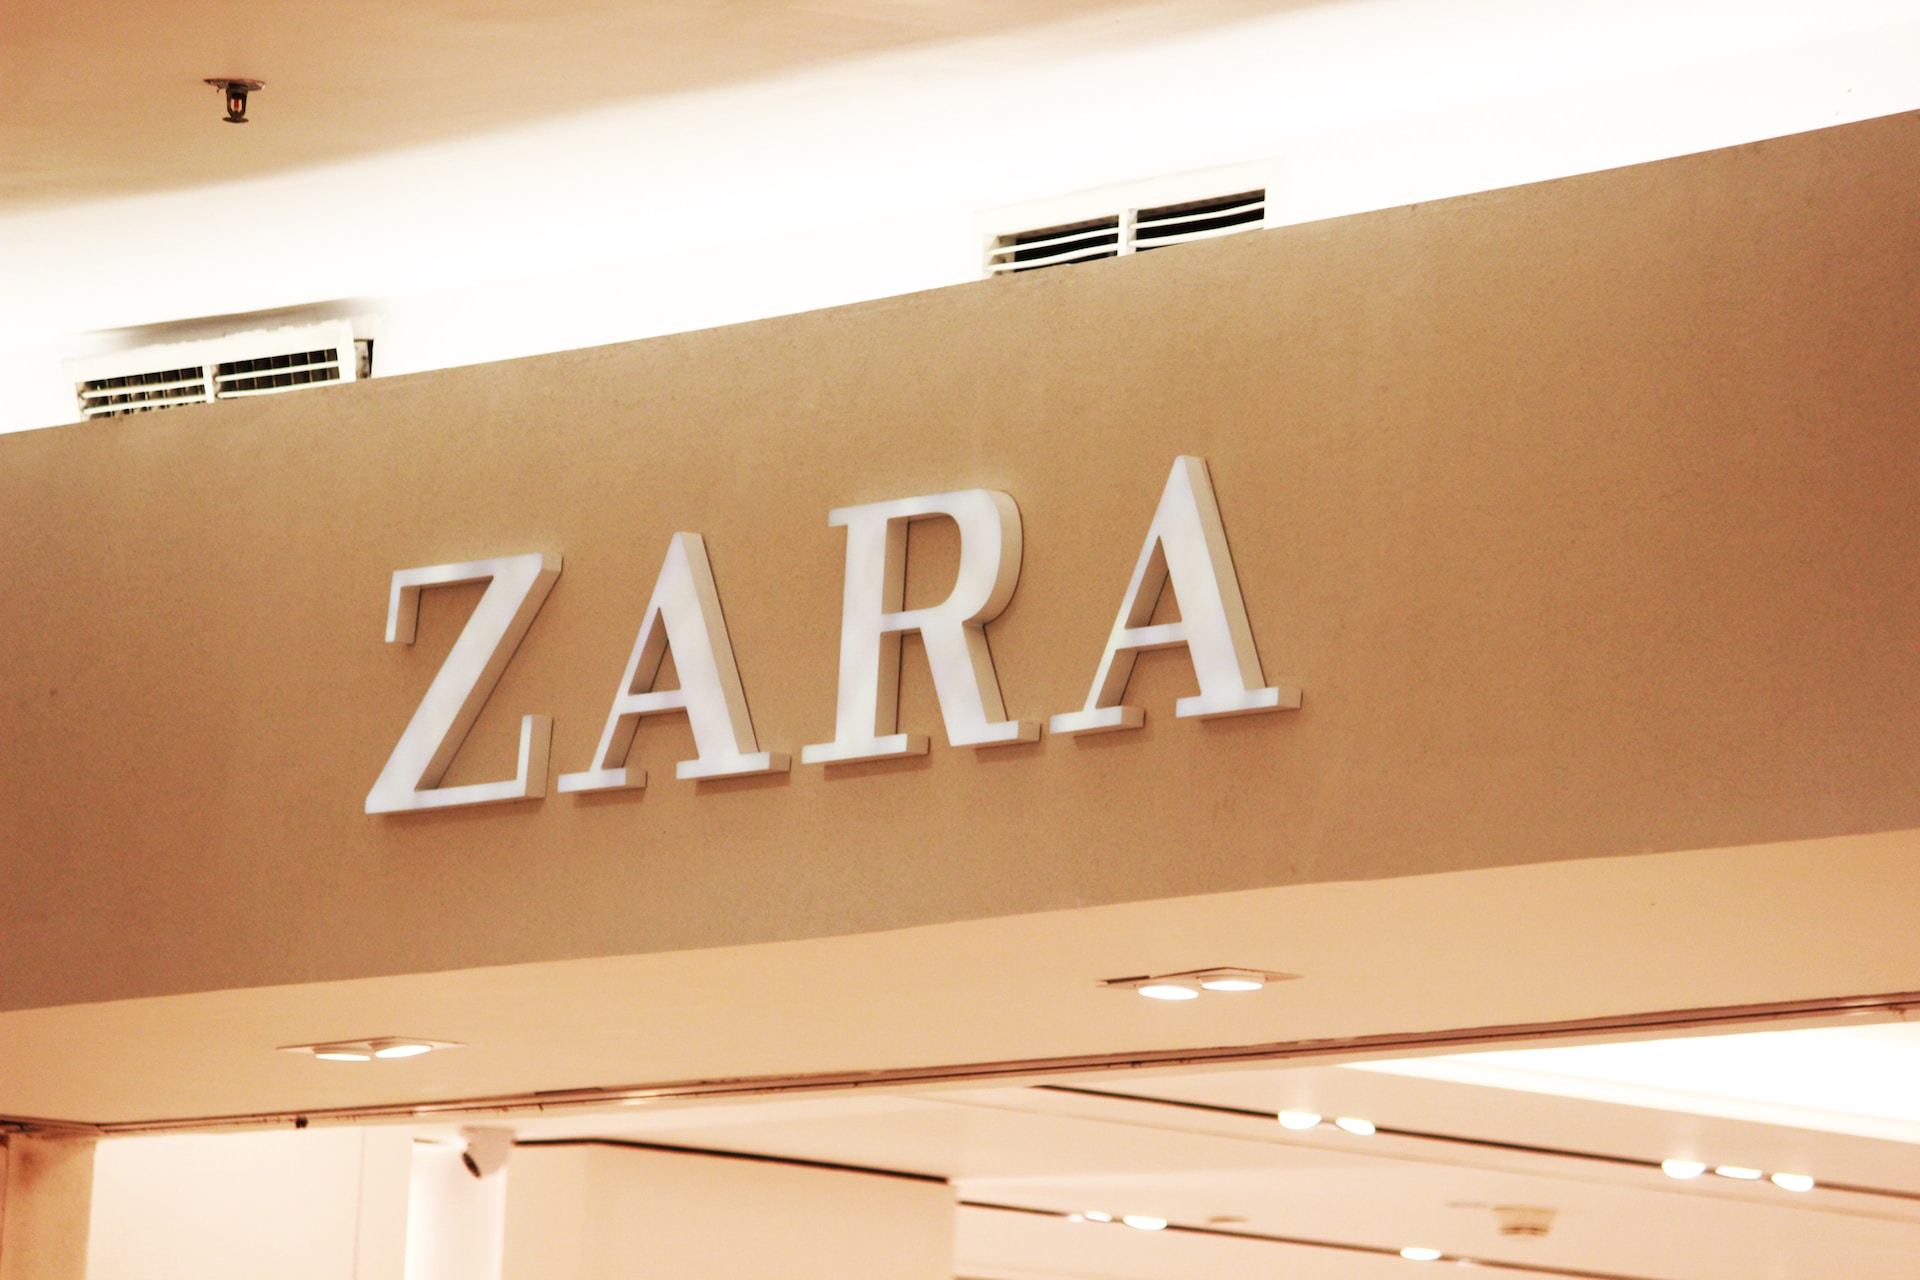 Zara Return Policy